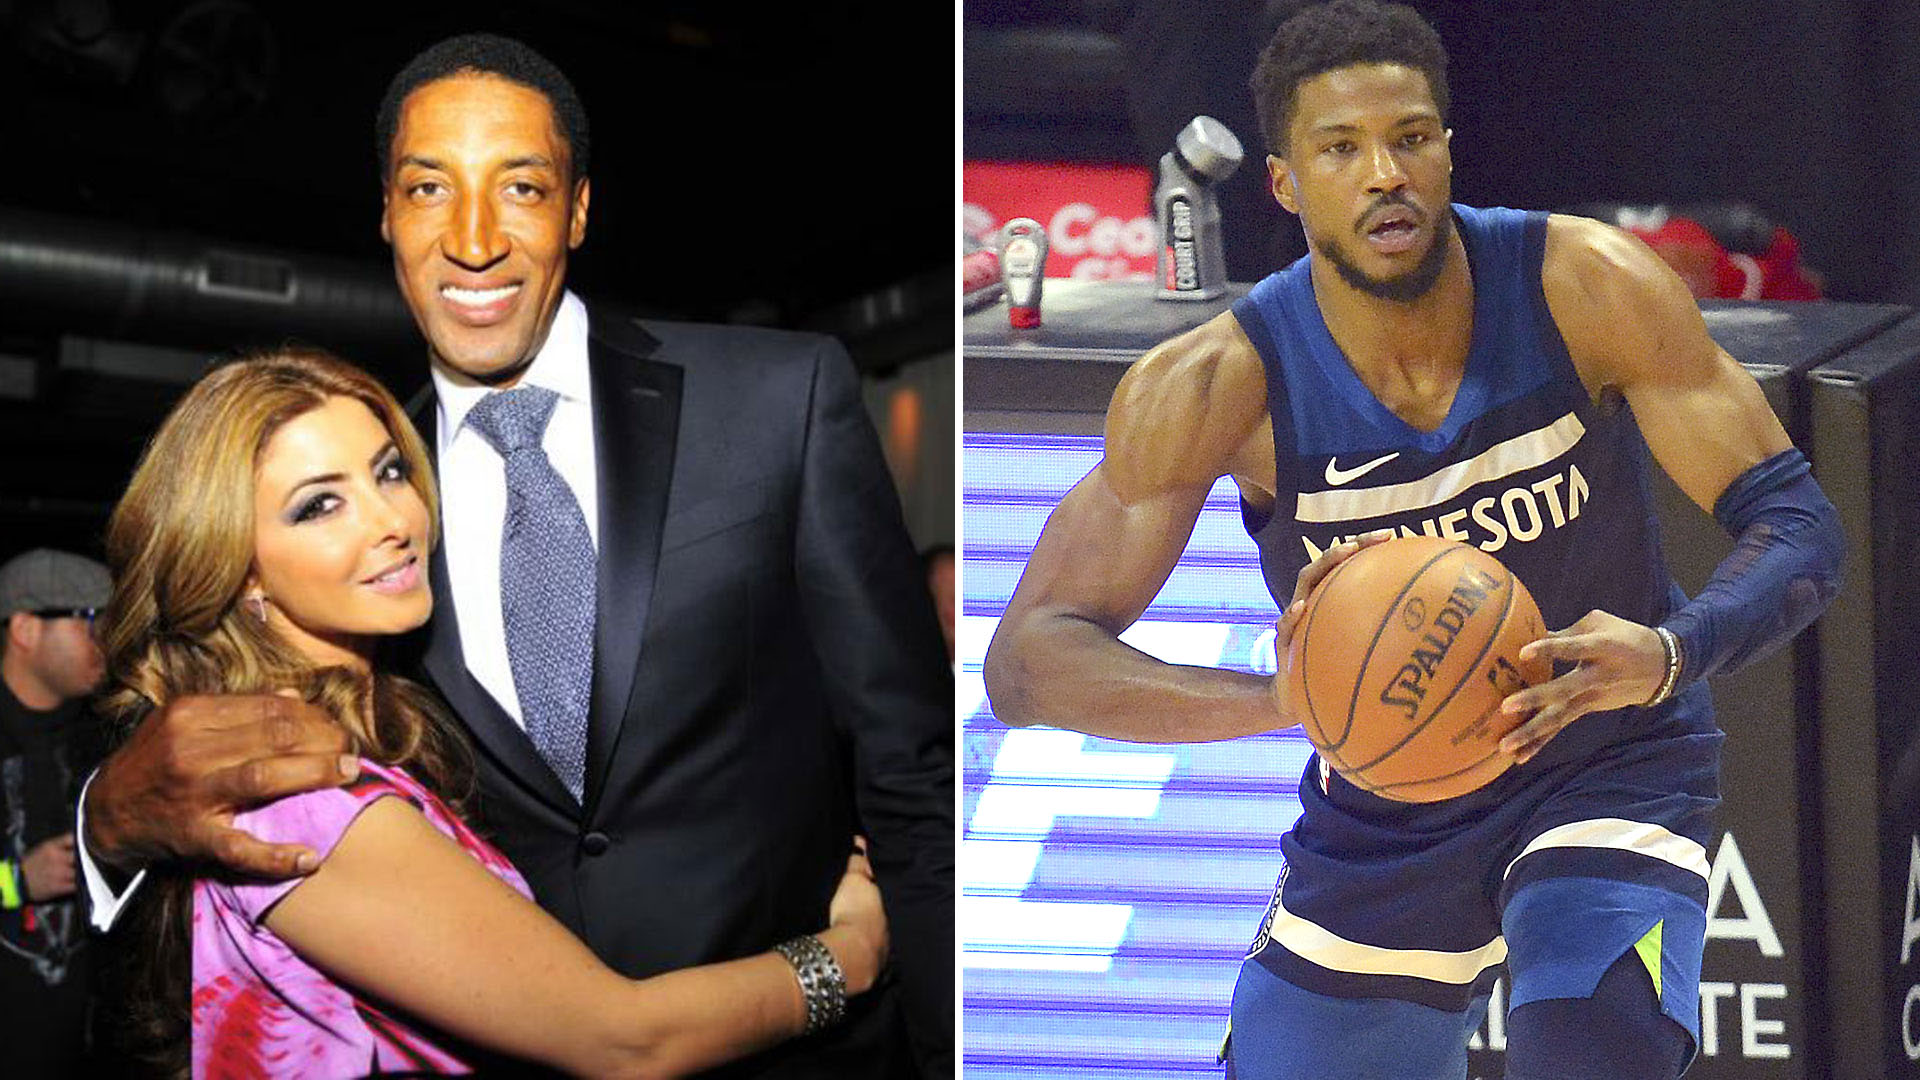 La ex esposa de Pippen tuvo un romance con un jugador de la NBA que estaba en pareja